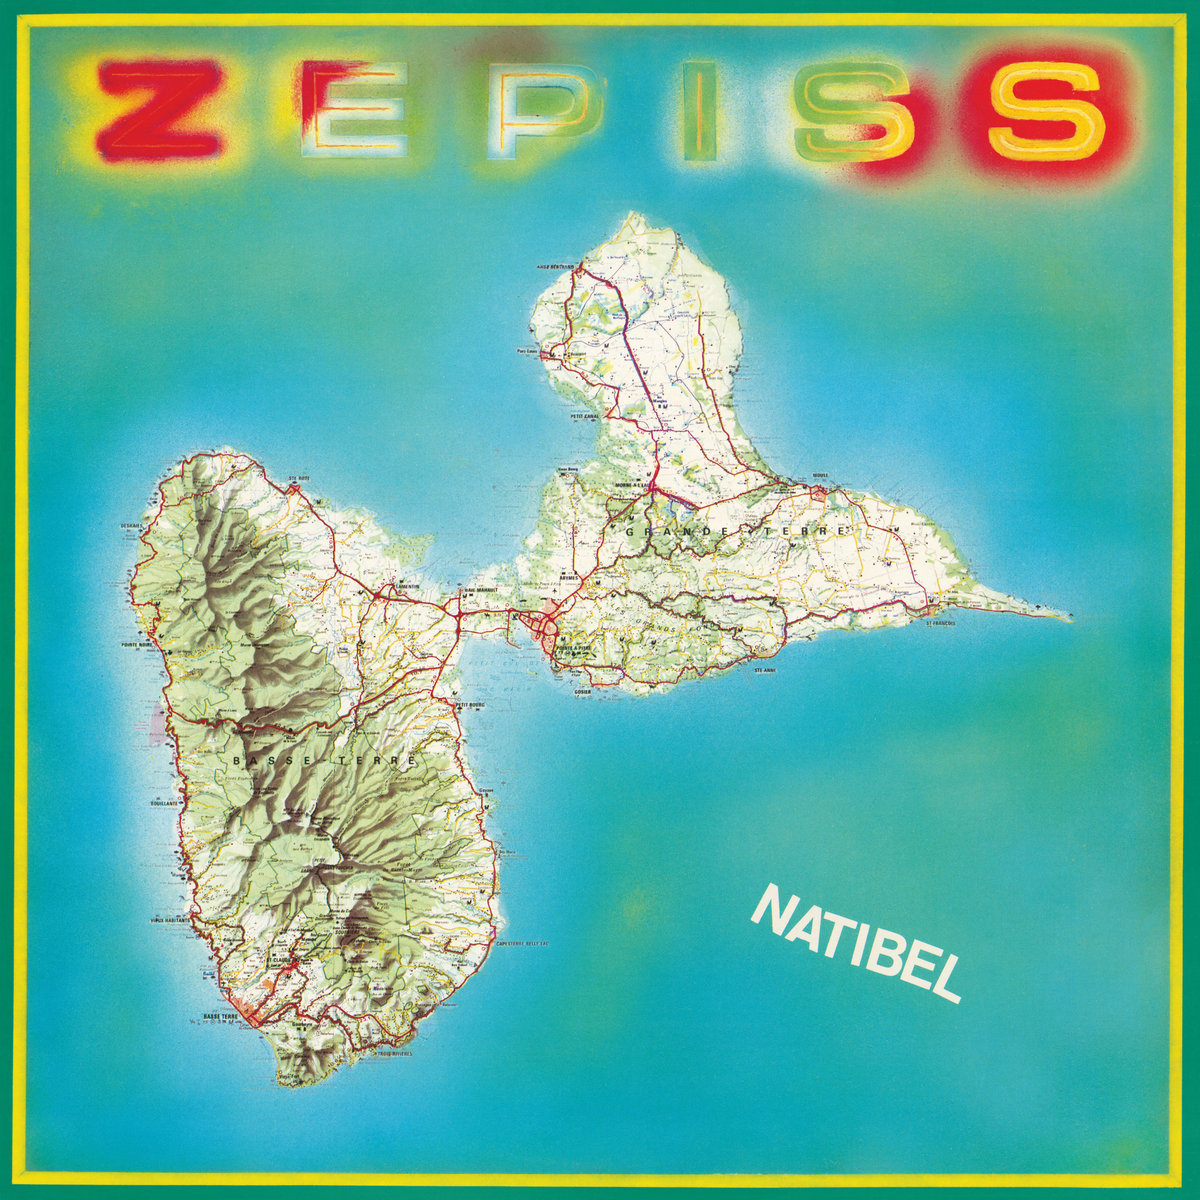 ZEPISS - NATIBEL - LP